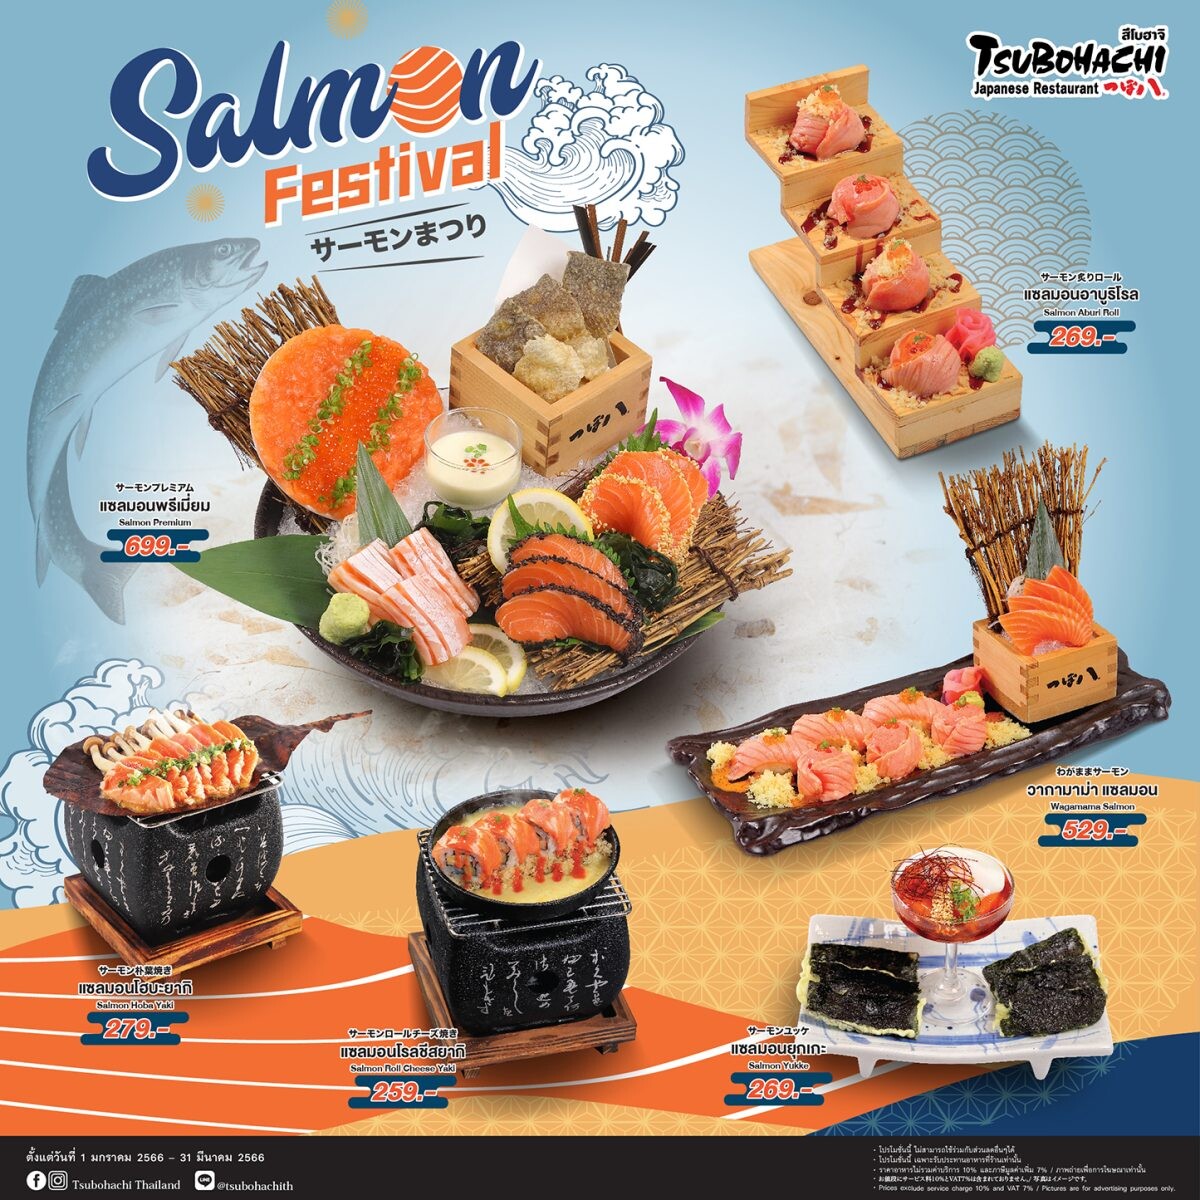 ร้านอาหารญี่ปุ่น "สึโบฮาจิ" จัดโปรโมชั่น "Salmon Festival" ขนความอร่อยเมนูแซลมอนพร้อมเสิร์ฟต้อนรับศักราชใหม่